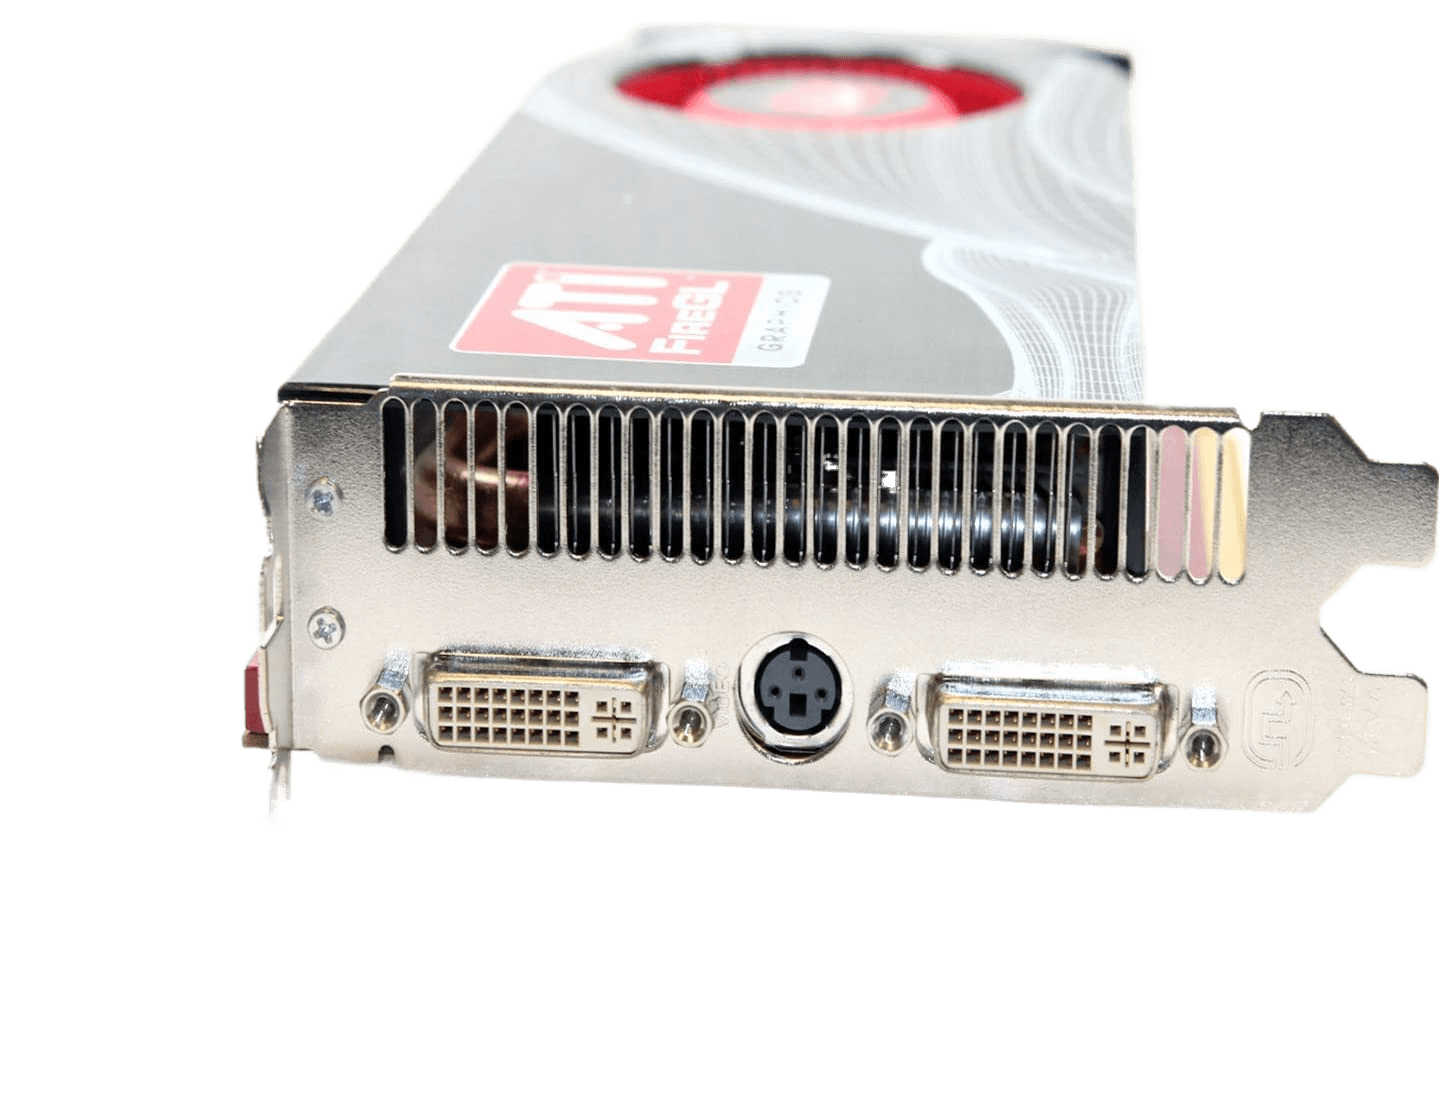 Dell ATI FireGL V7600 GP933 512 MB 2x DVI PCI-e Workstation Graphics Video Card